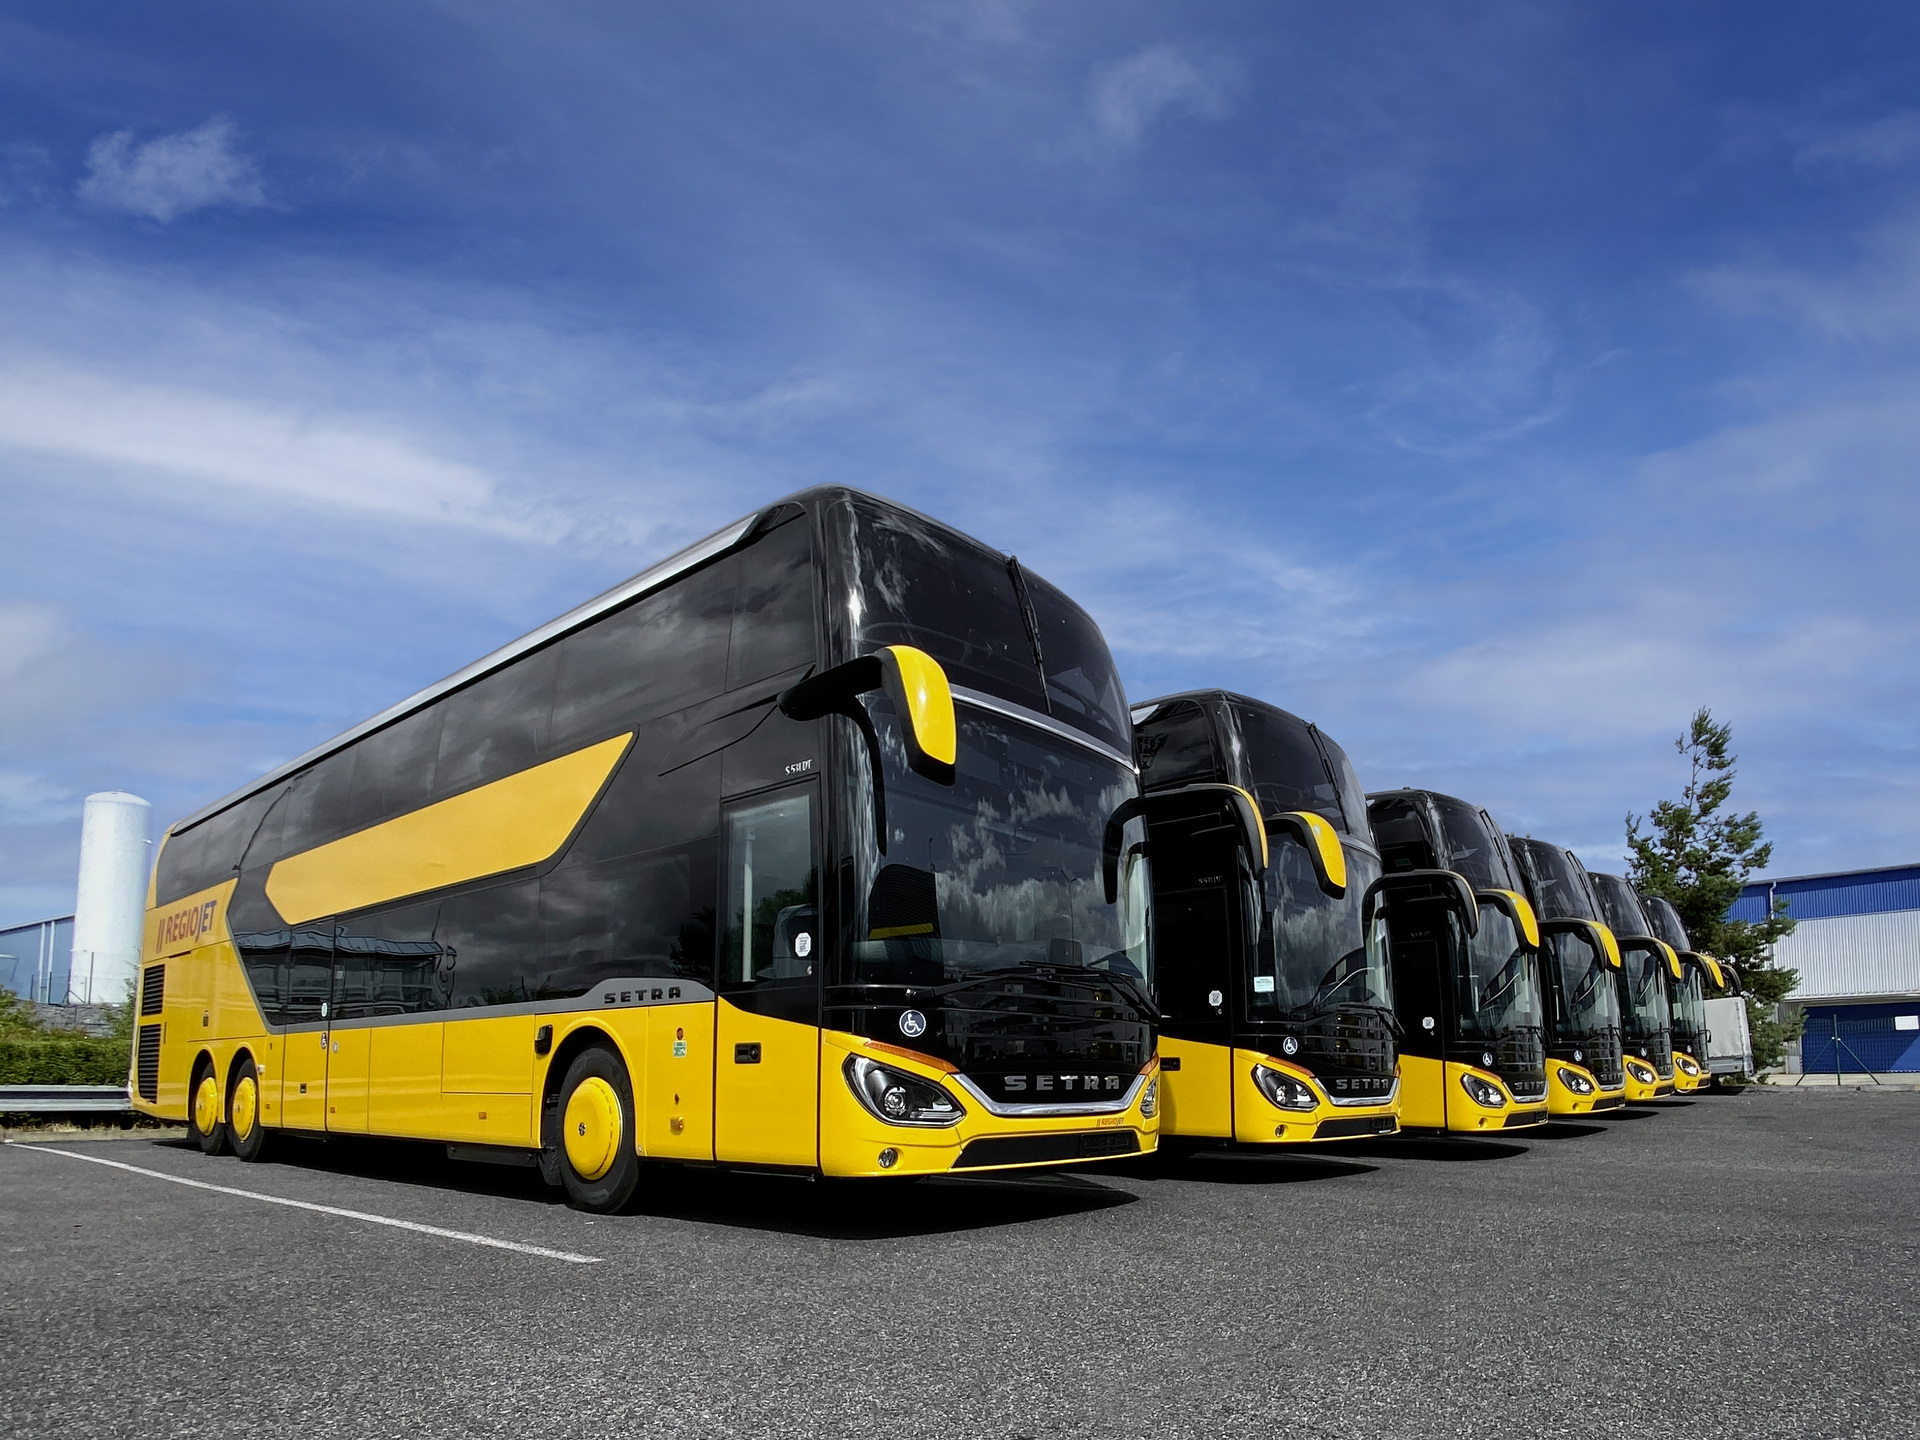 Melon yellow Setra touring coaches for Regio Jet